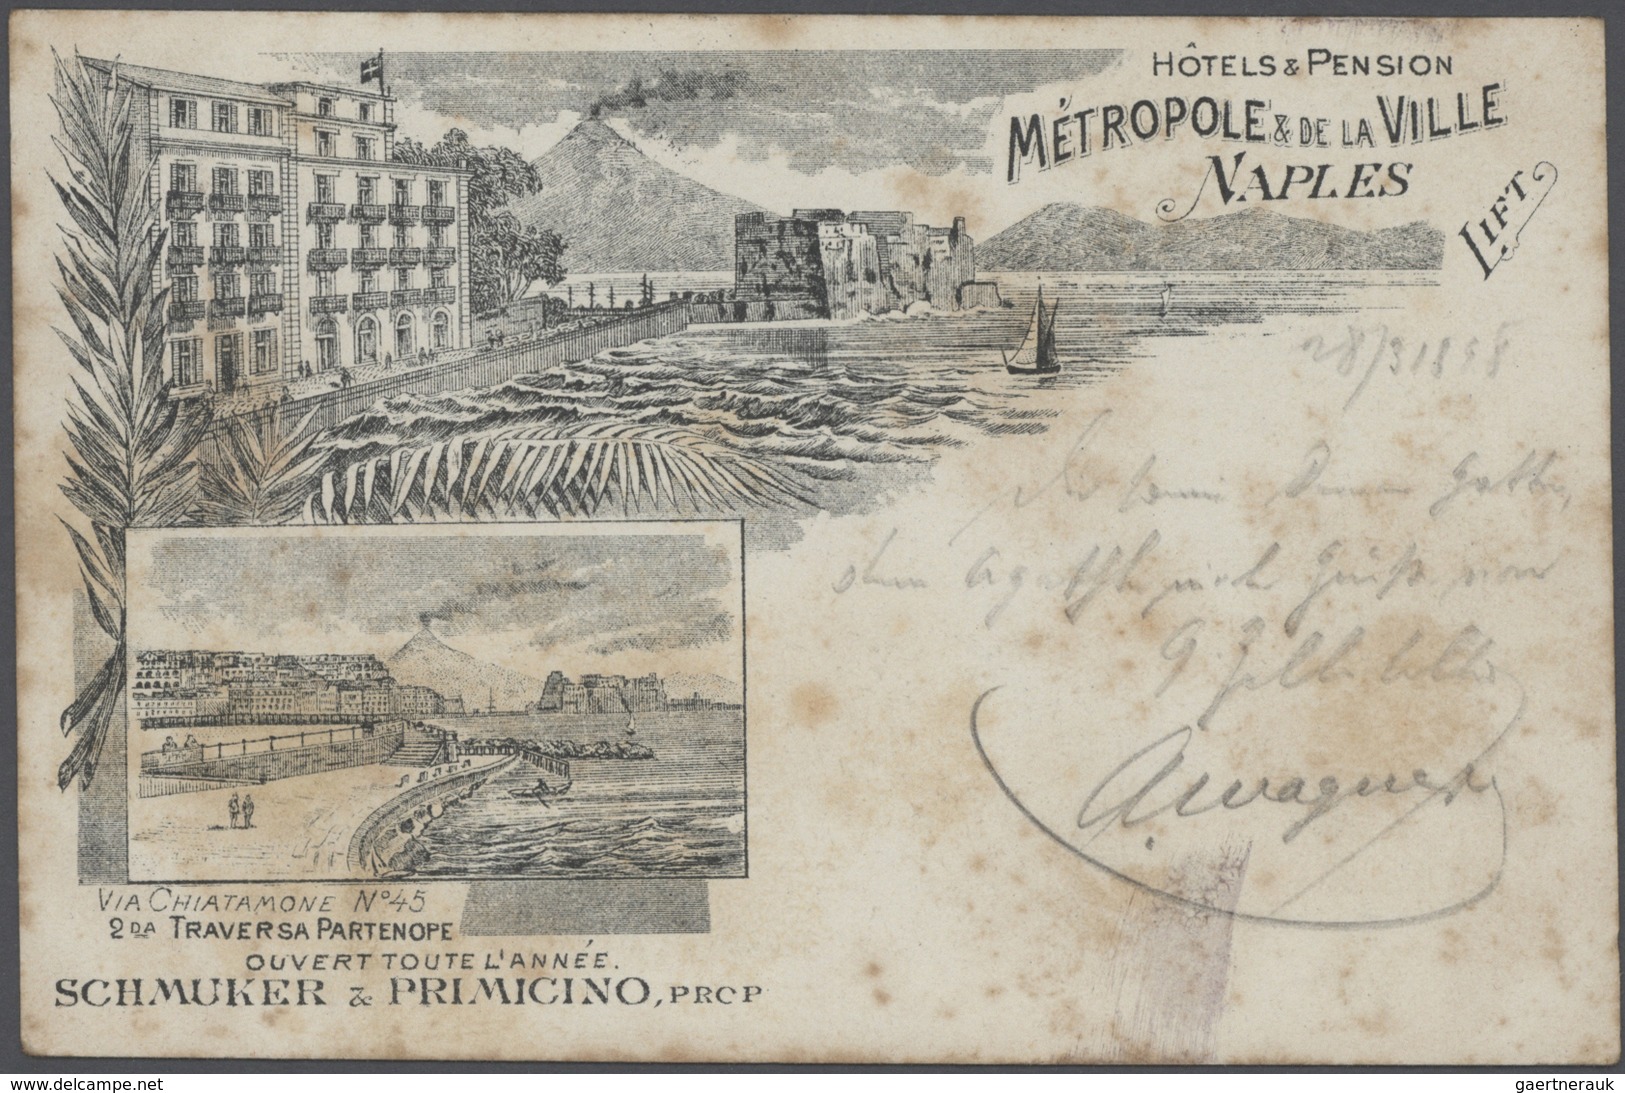 Ansichtskarten: 1895-1905, tolles Album mit 400 gebrauchten AK an eine Adresse, nur topographische K